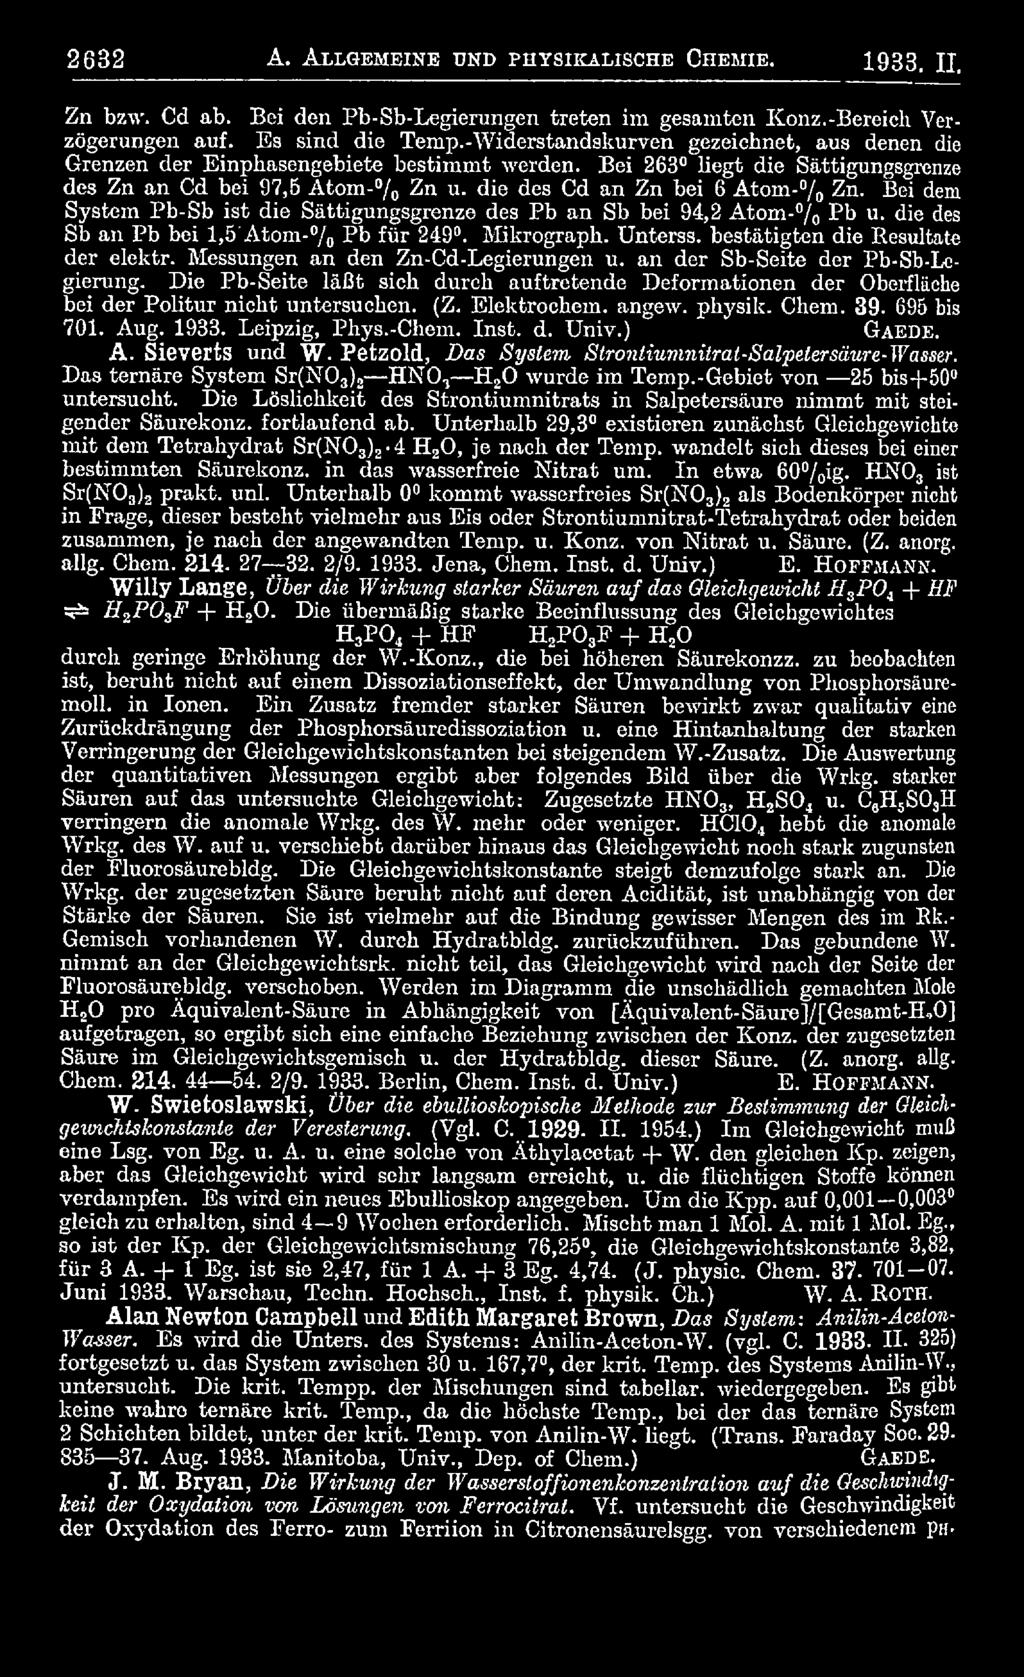 angew. physik. Chem. 39. 695 bis 701. Aug. 1933. Leipzig, Phys.-Chem. Inst. d. Univ.) G ae d e. A. Sieverts und W. Petzold, Das System Strontiumnitrat-Salpetersäure-Wasser.